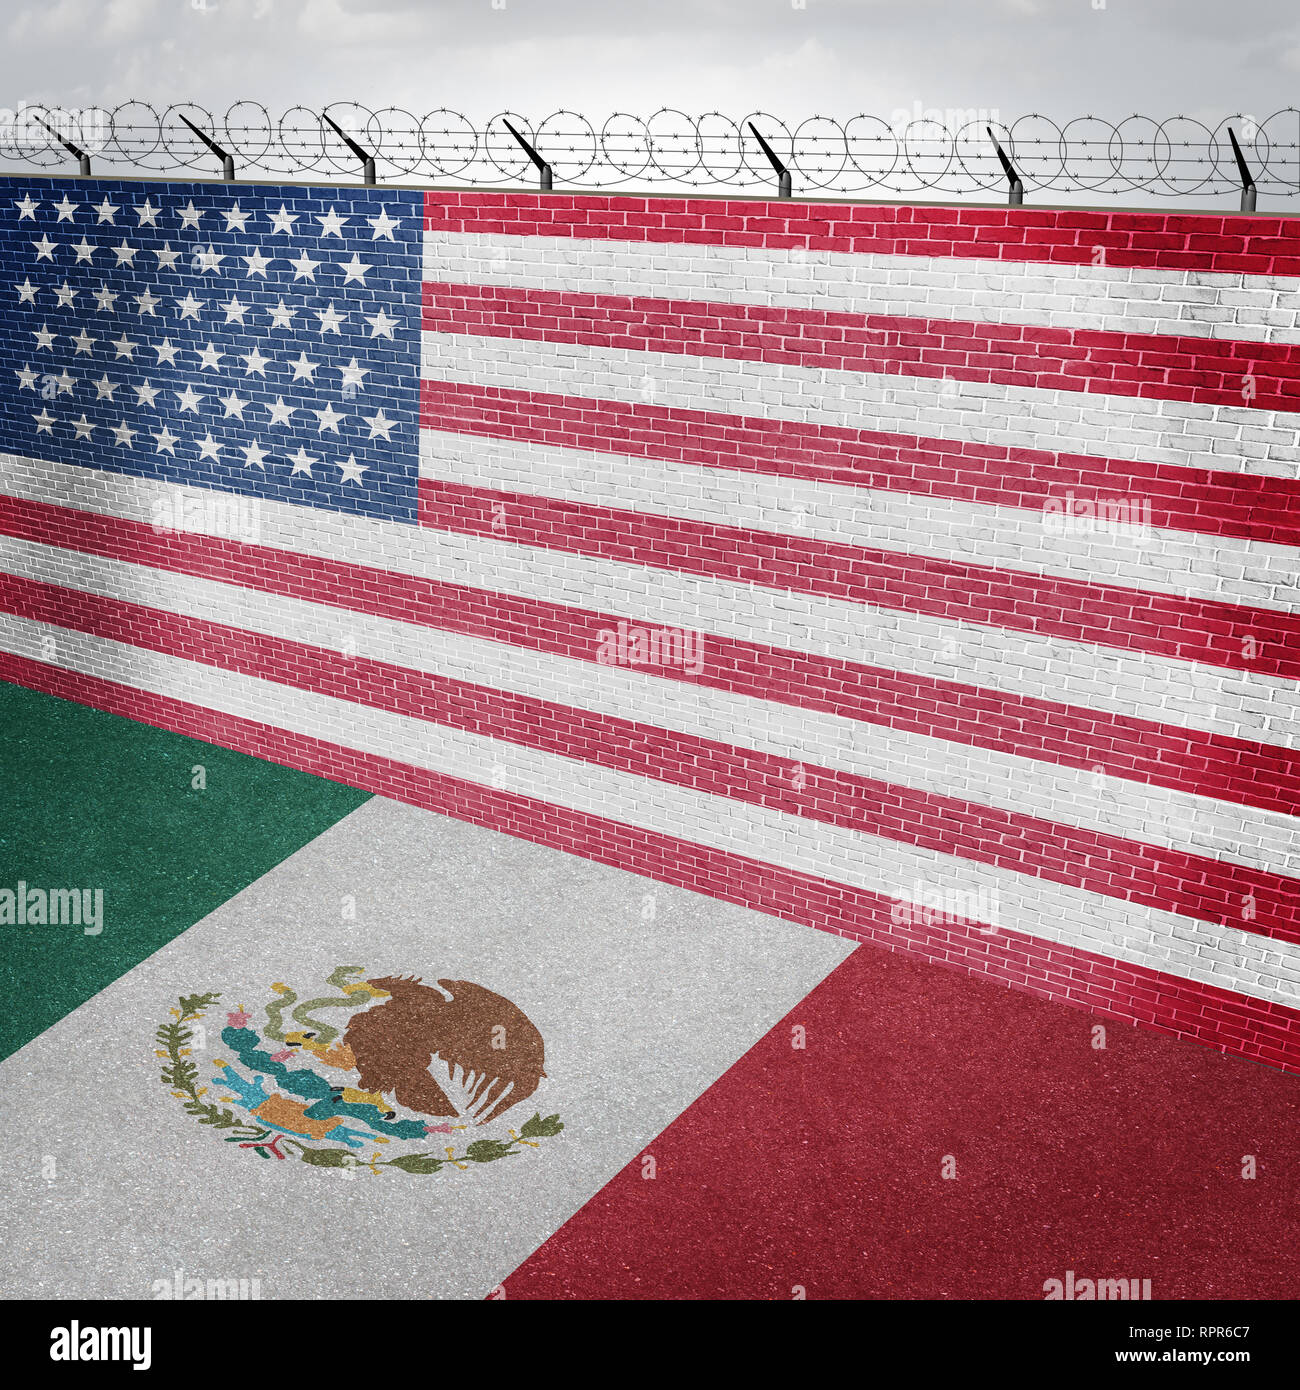 México La frontera de EE.UU. y la pared de seguridad patria americana a lo largo de la frontera mexicana como una barrera para mantener a los inmigrantes ilegales fuera del país. Foto de stock